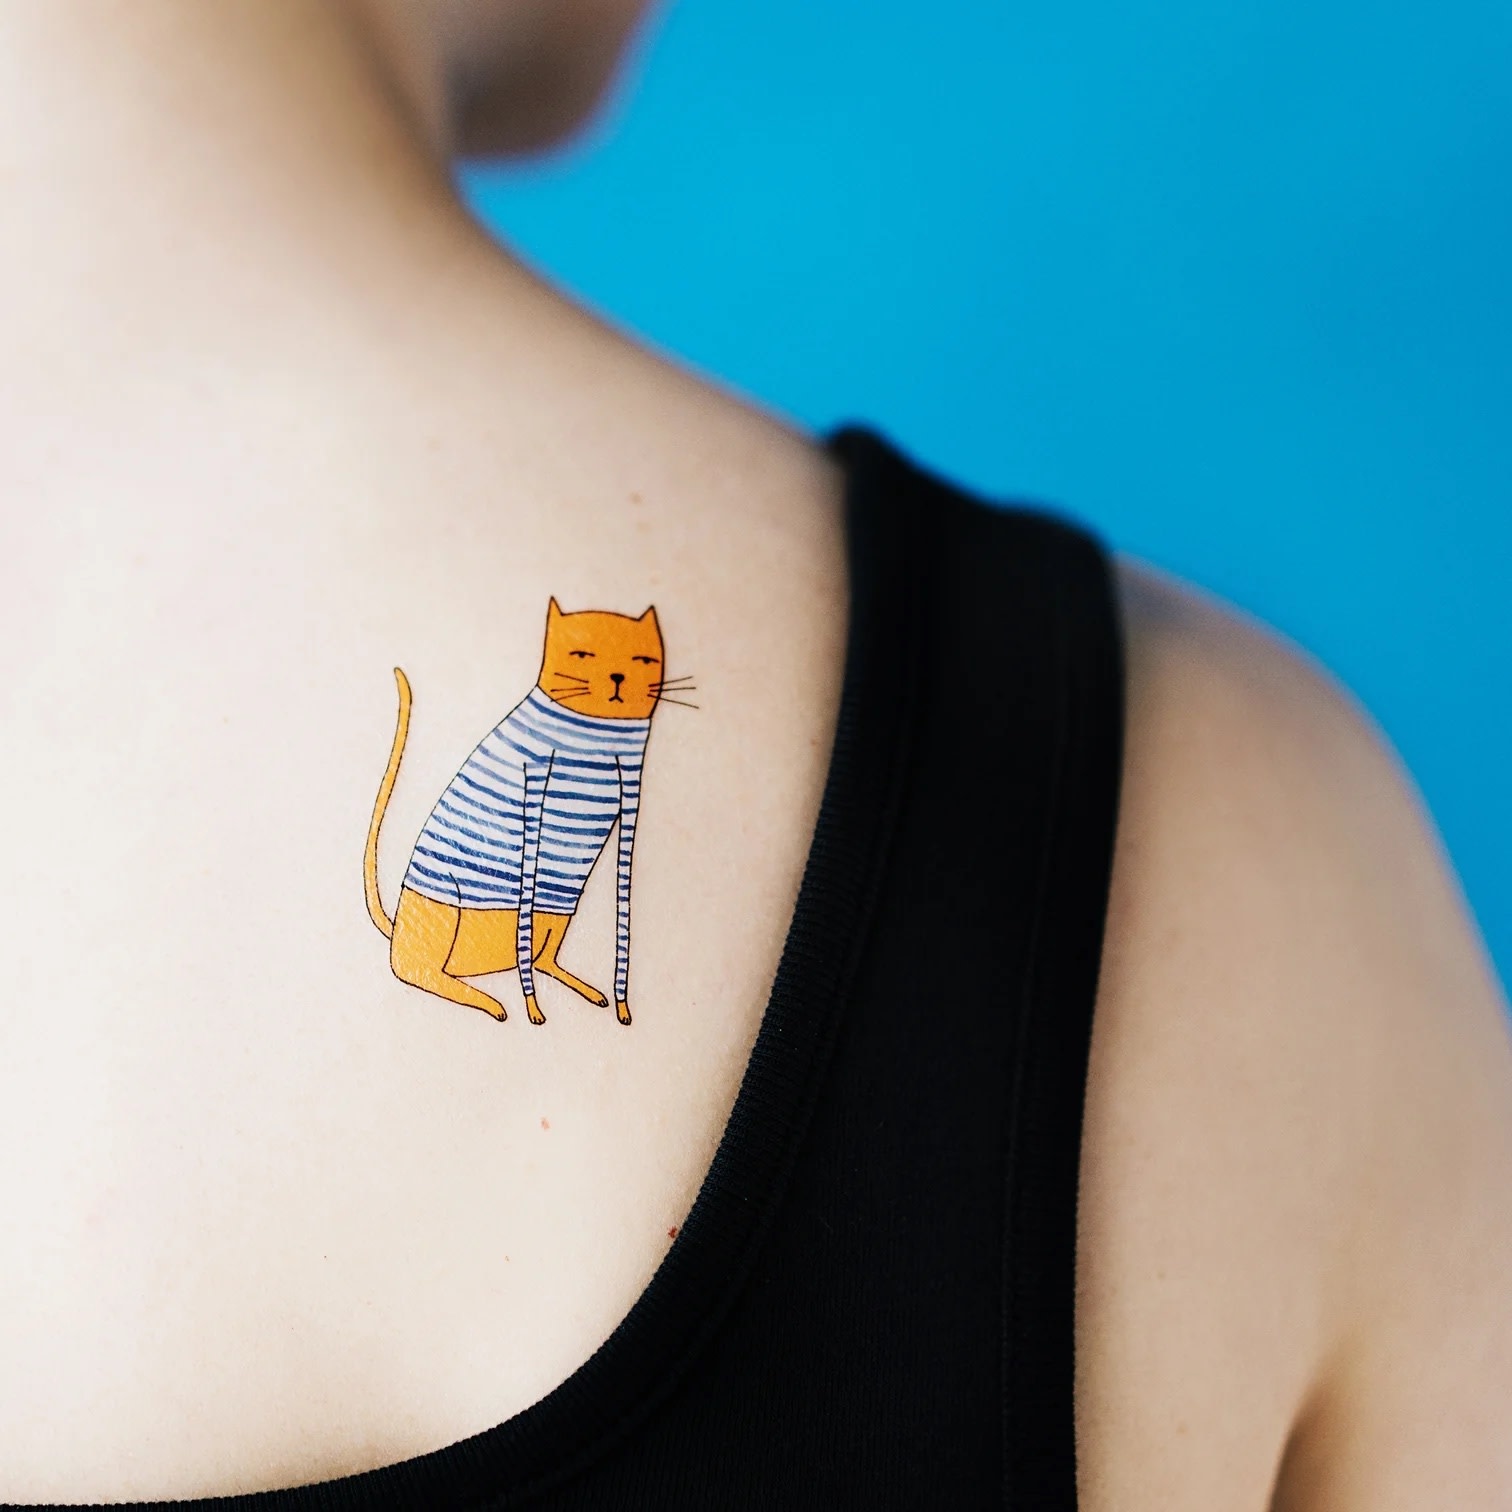 tattly ta tattly sweater cat tattoo set of 2